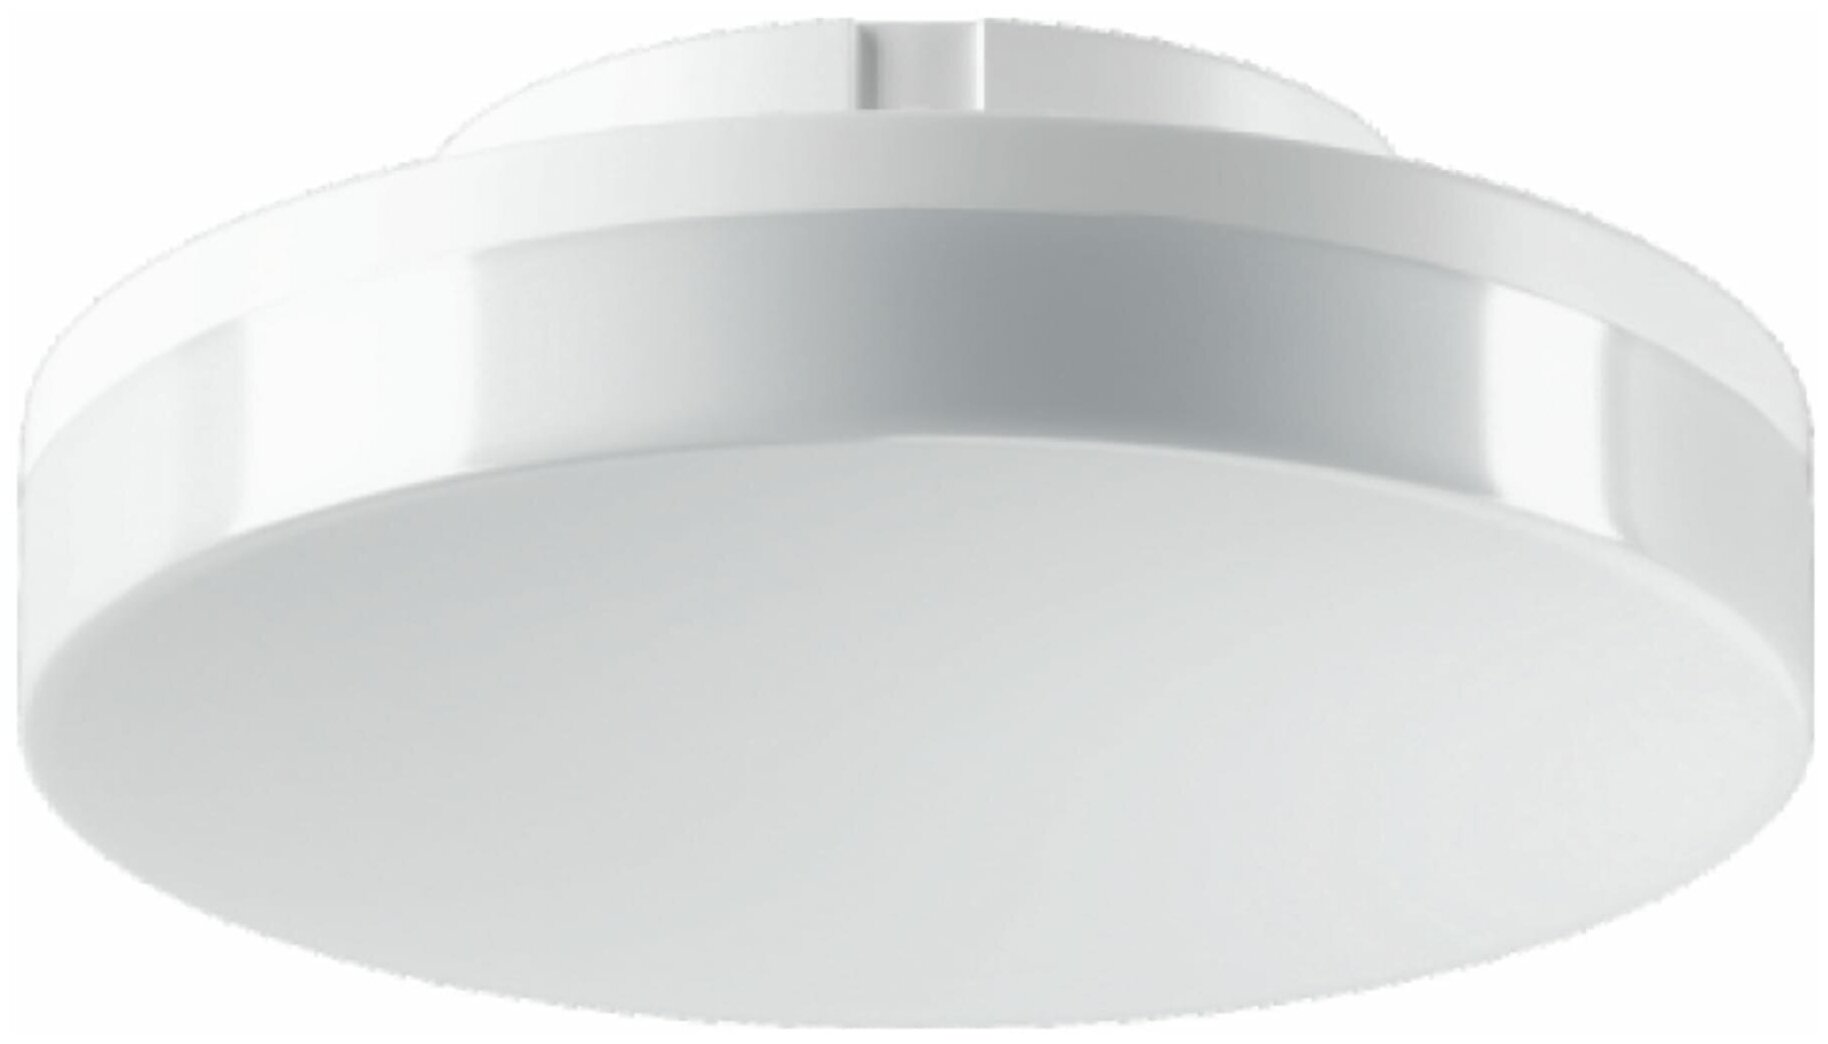 Лампа светодиодная Volpe GX53 220-240 В 9 Вт спот матовая 900 лм теплый белый свет. Набор из 2 шт.